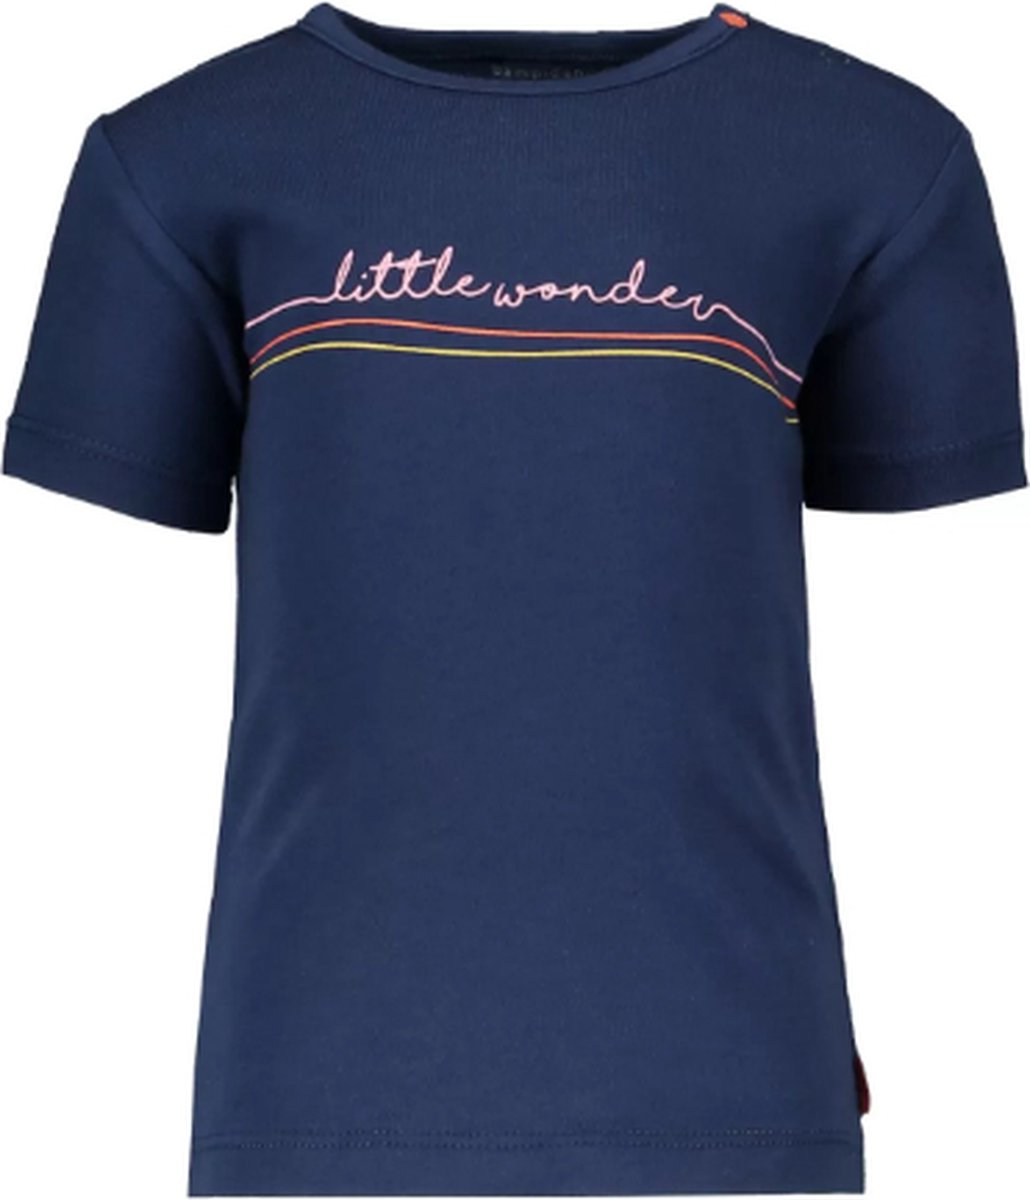 Bampidano - T-shirt donkerblauw met Little wonder in roze - Maat 56